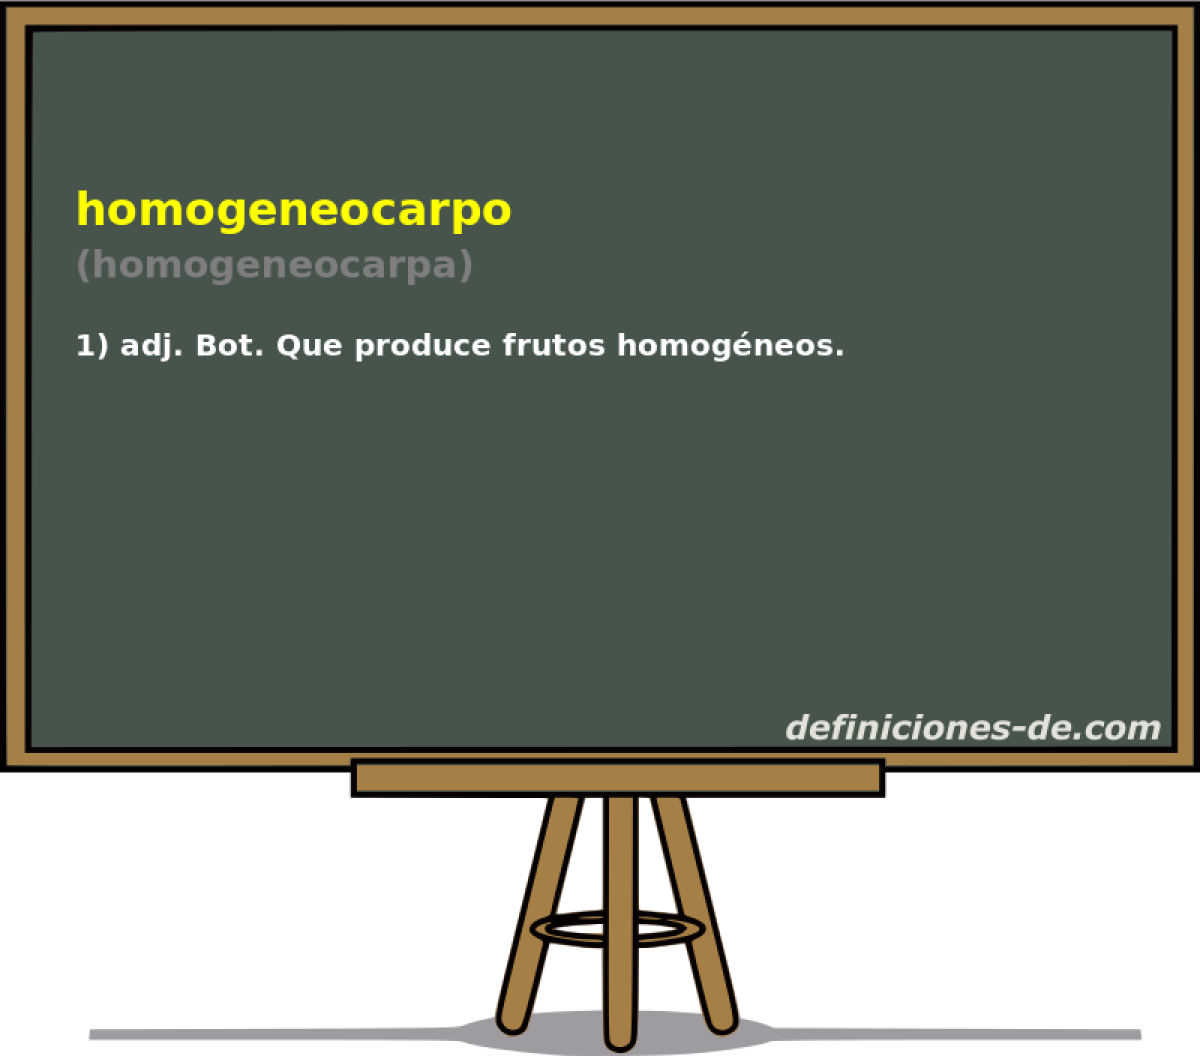 homogeneocarpo (homogeneocarpa)